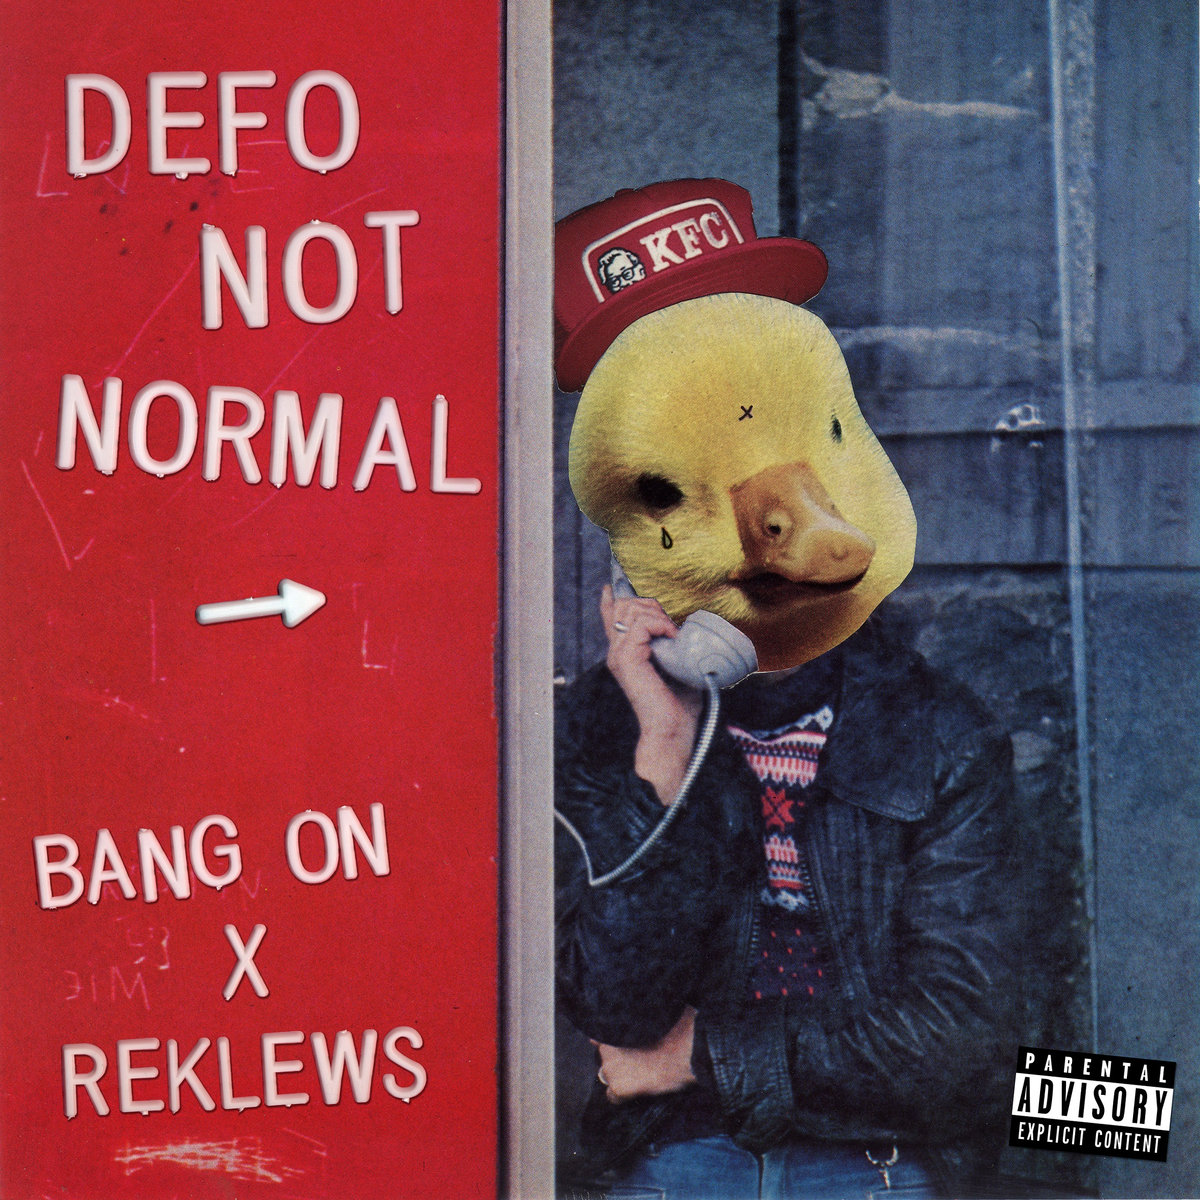 Defo_not_normal_bang_on_reklews